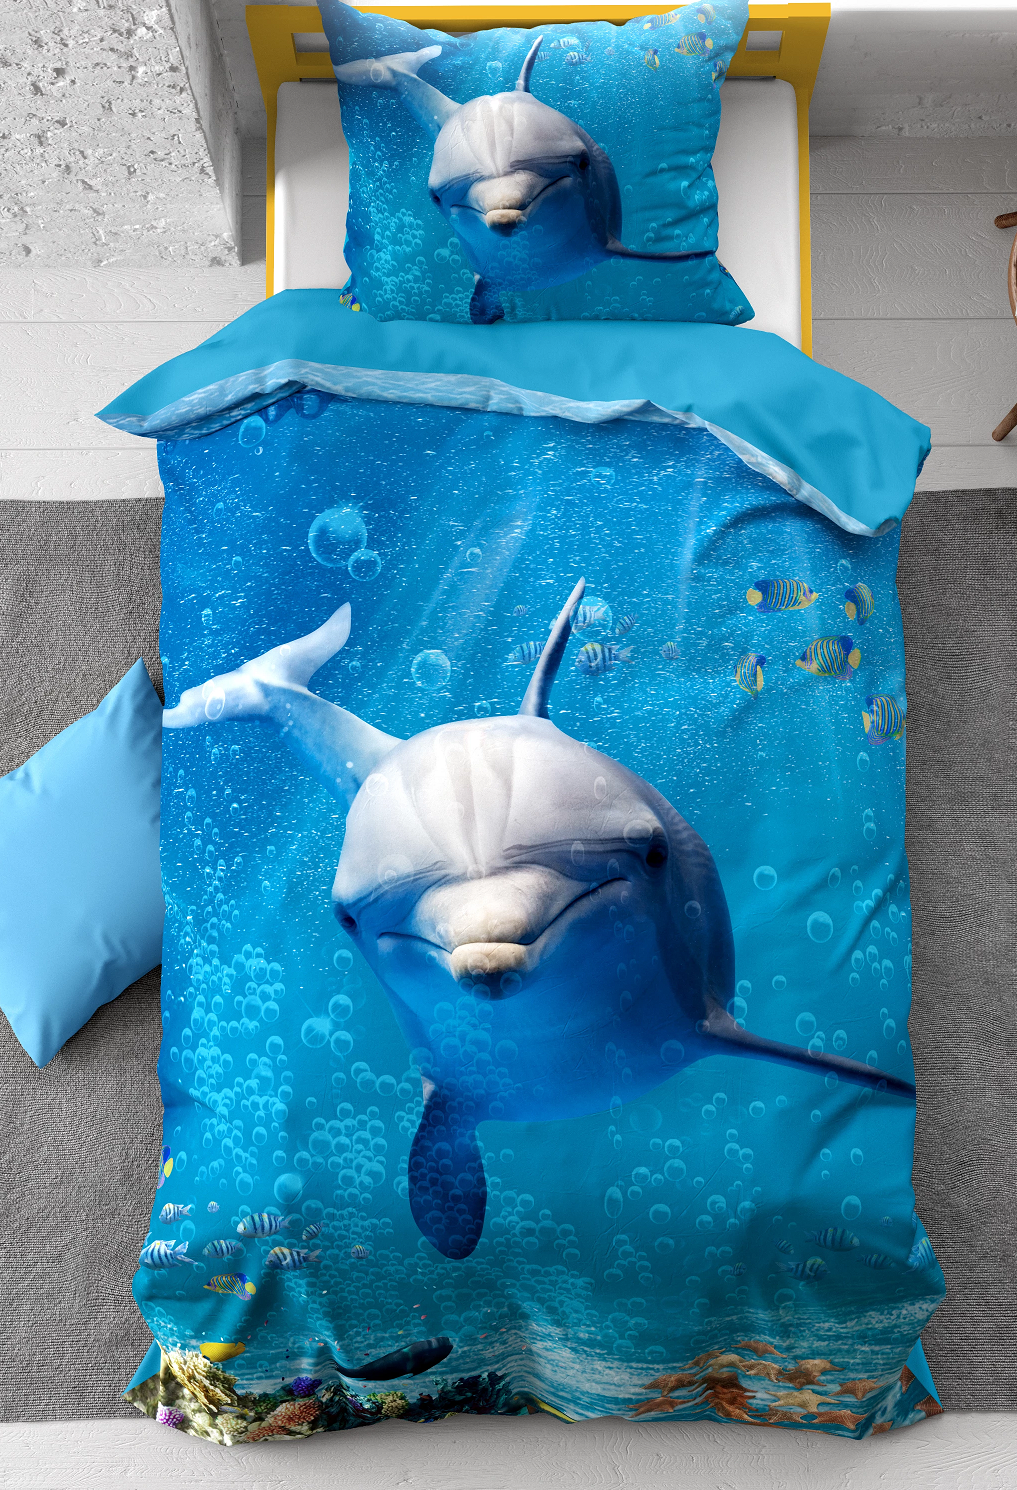 Worstelen Pijlpunt rib 1-persoons kinder dekbedovertrek (dekbed hoes) blauw met dolfijn (dolphin),  tropische vissen, zeesterren en schelpen in de helder blauwe zee (water)  KATOEN eenpersoons140 x 220 cm – Blije Kids